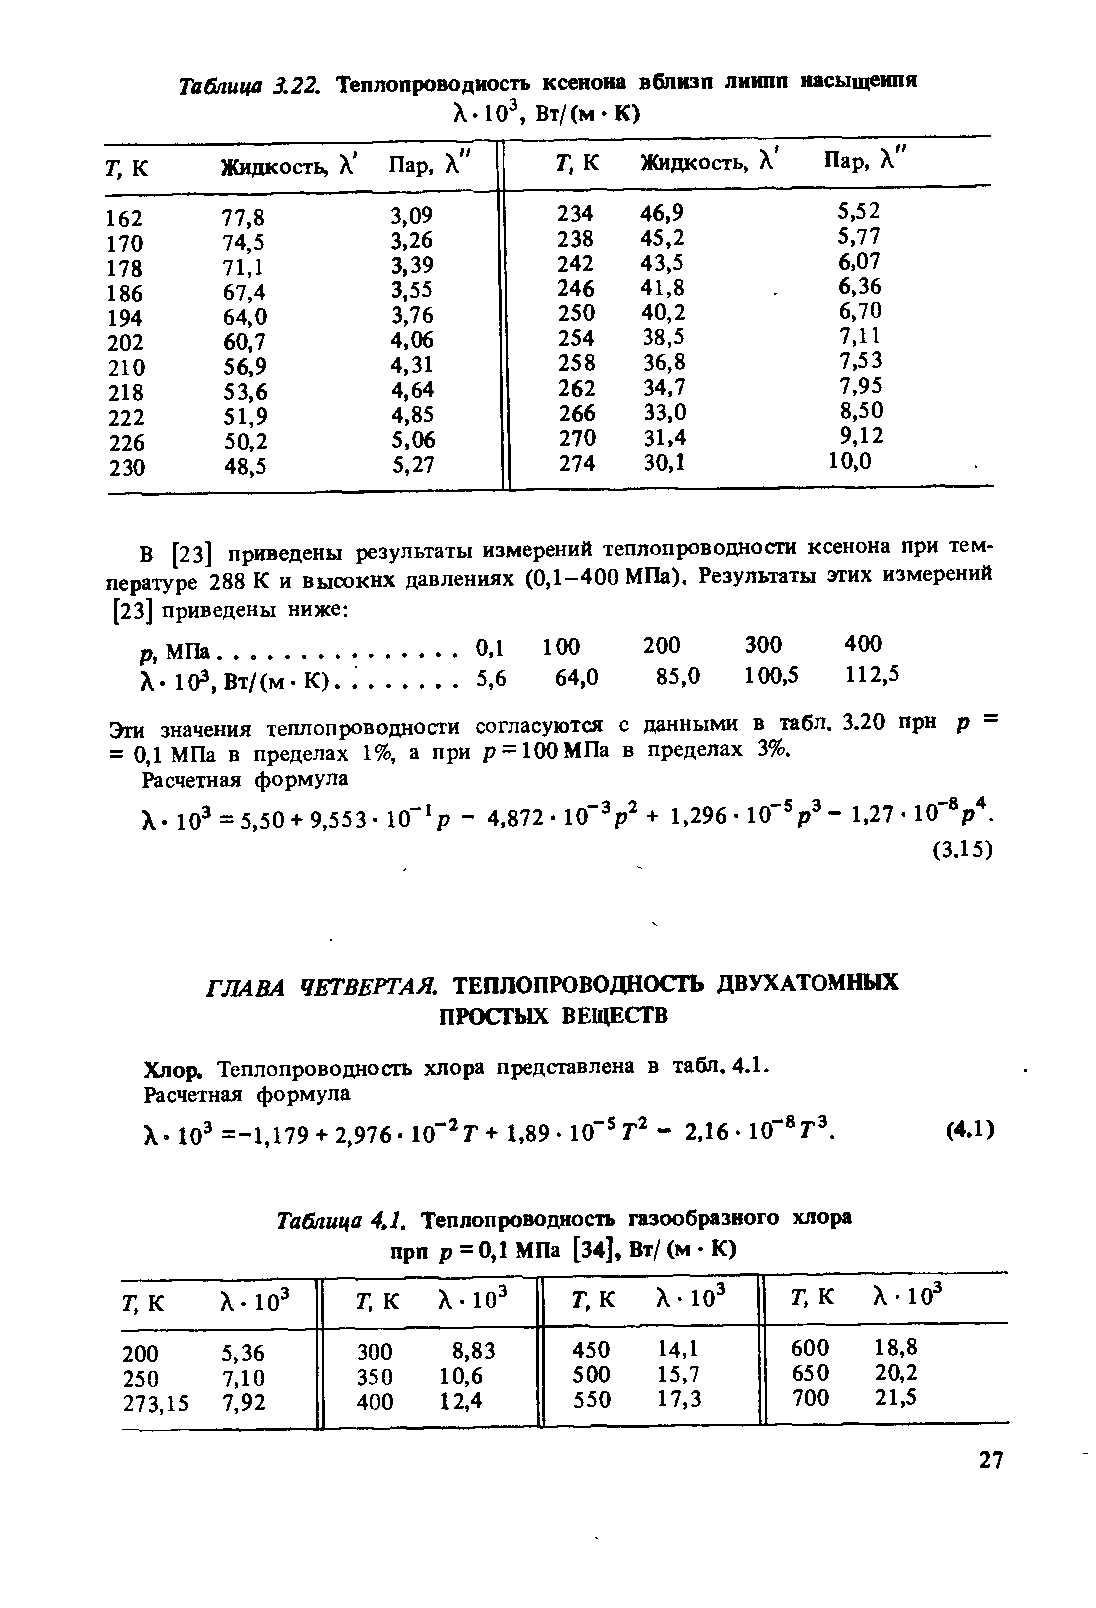 Таблица 4,1. Теплопроводность газообразного хлора прп р=0,1 МПа [34], Вт/ (м К)
